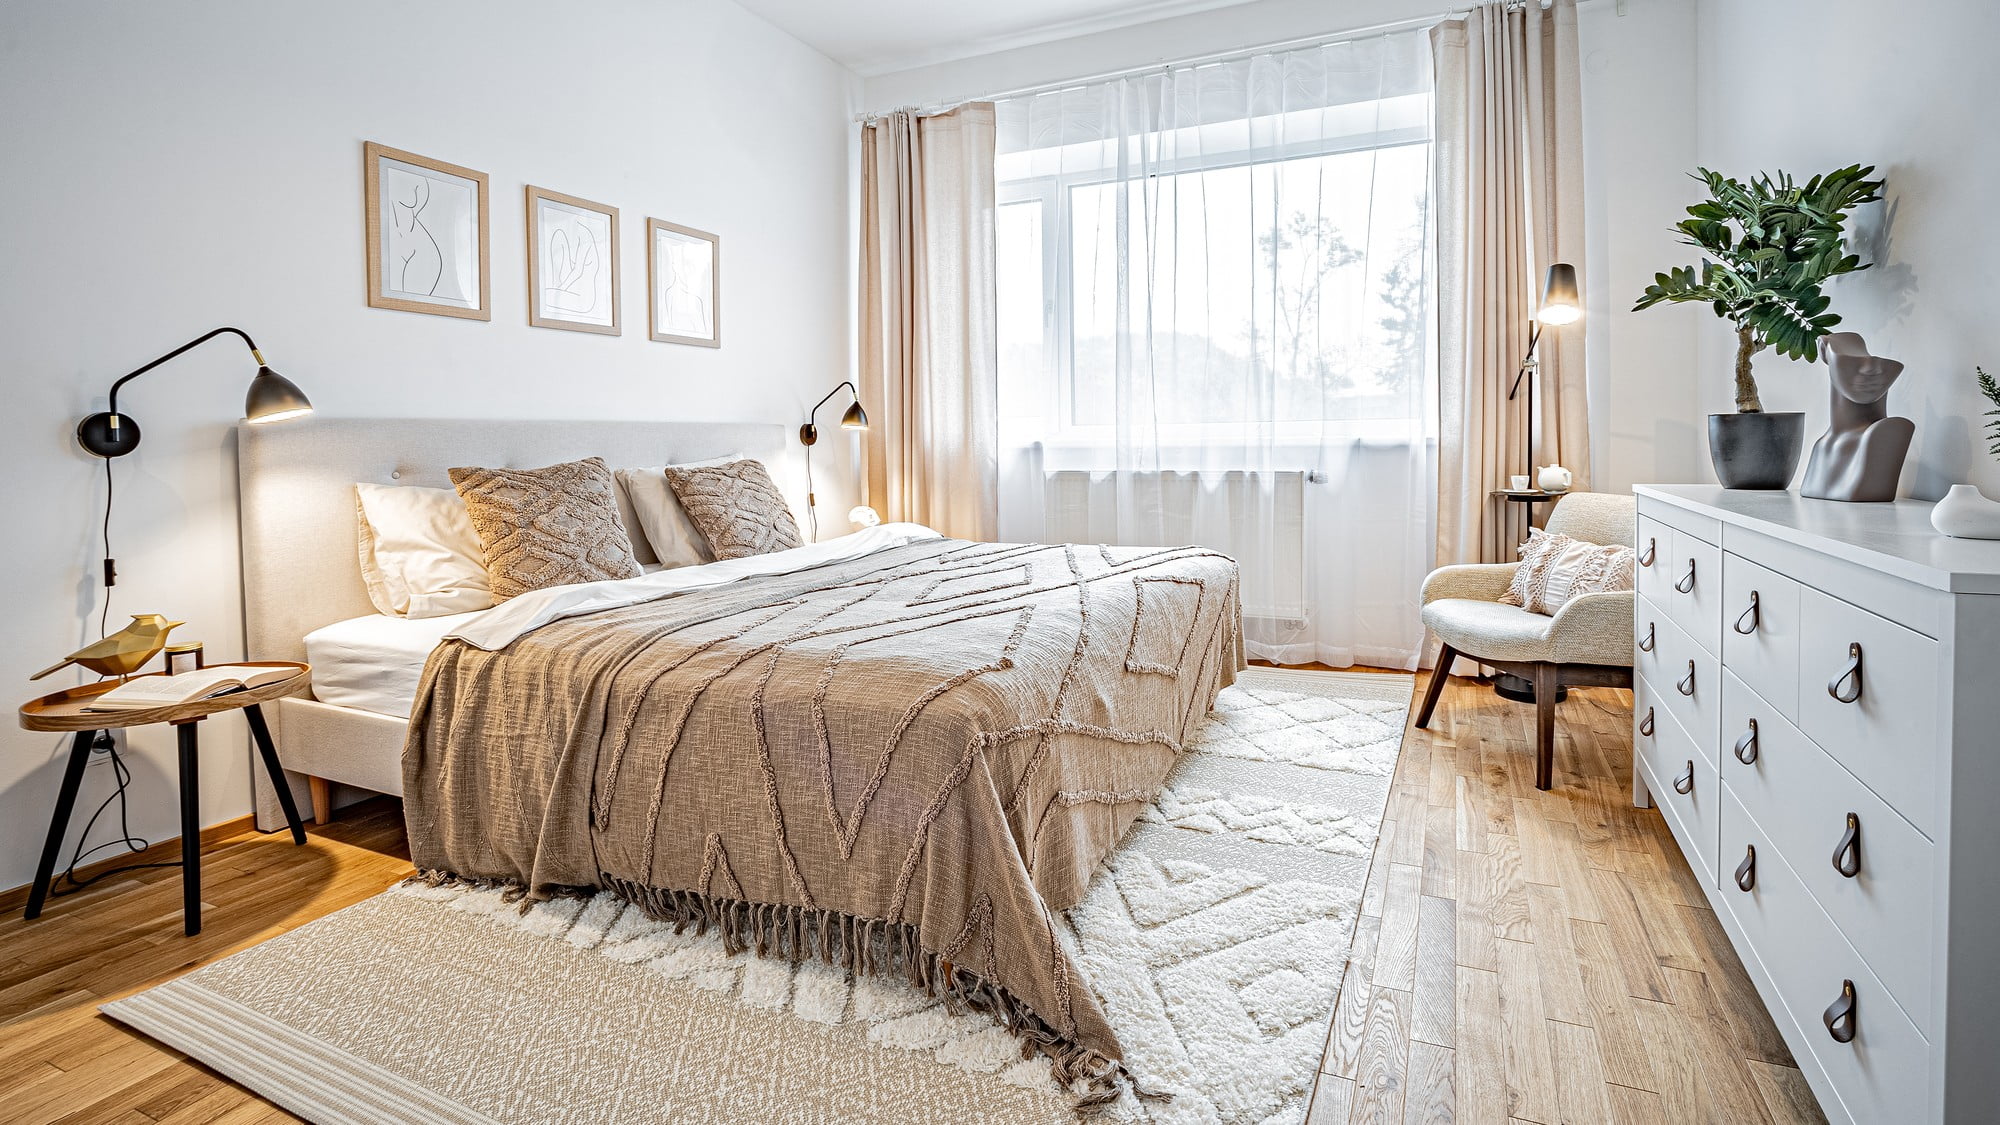 Moderná spálňa – inšpirácia pre interiér v monochromatickej krémovej palete.